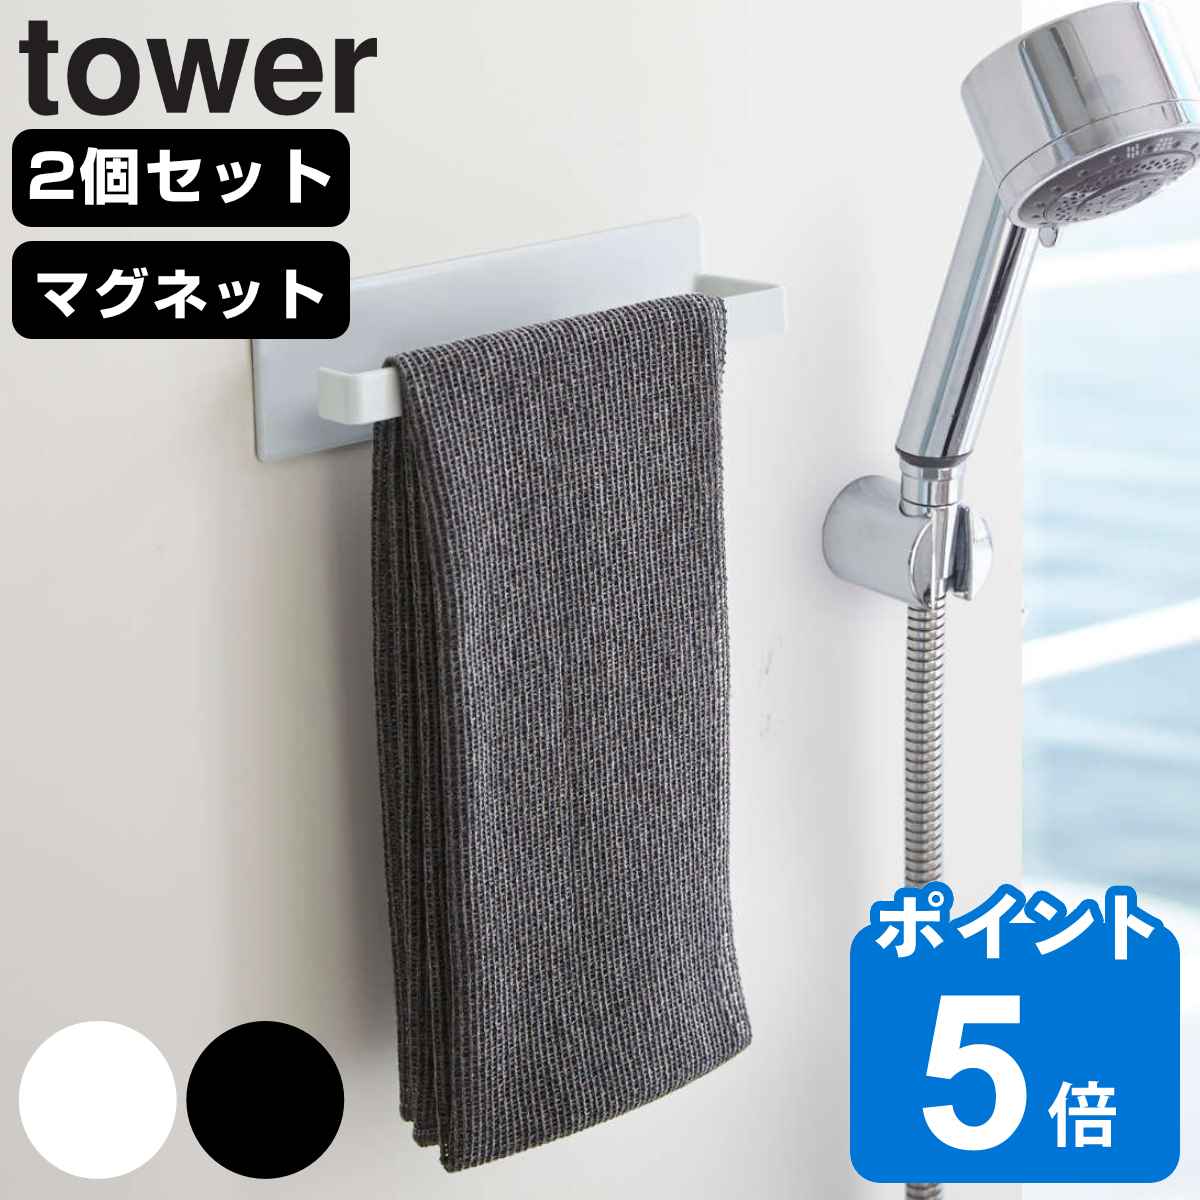 山崎実業 tower マグネットバスルームタオルハンガー タワー 2個セット